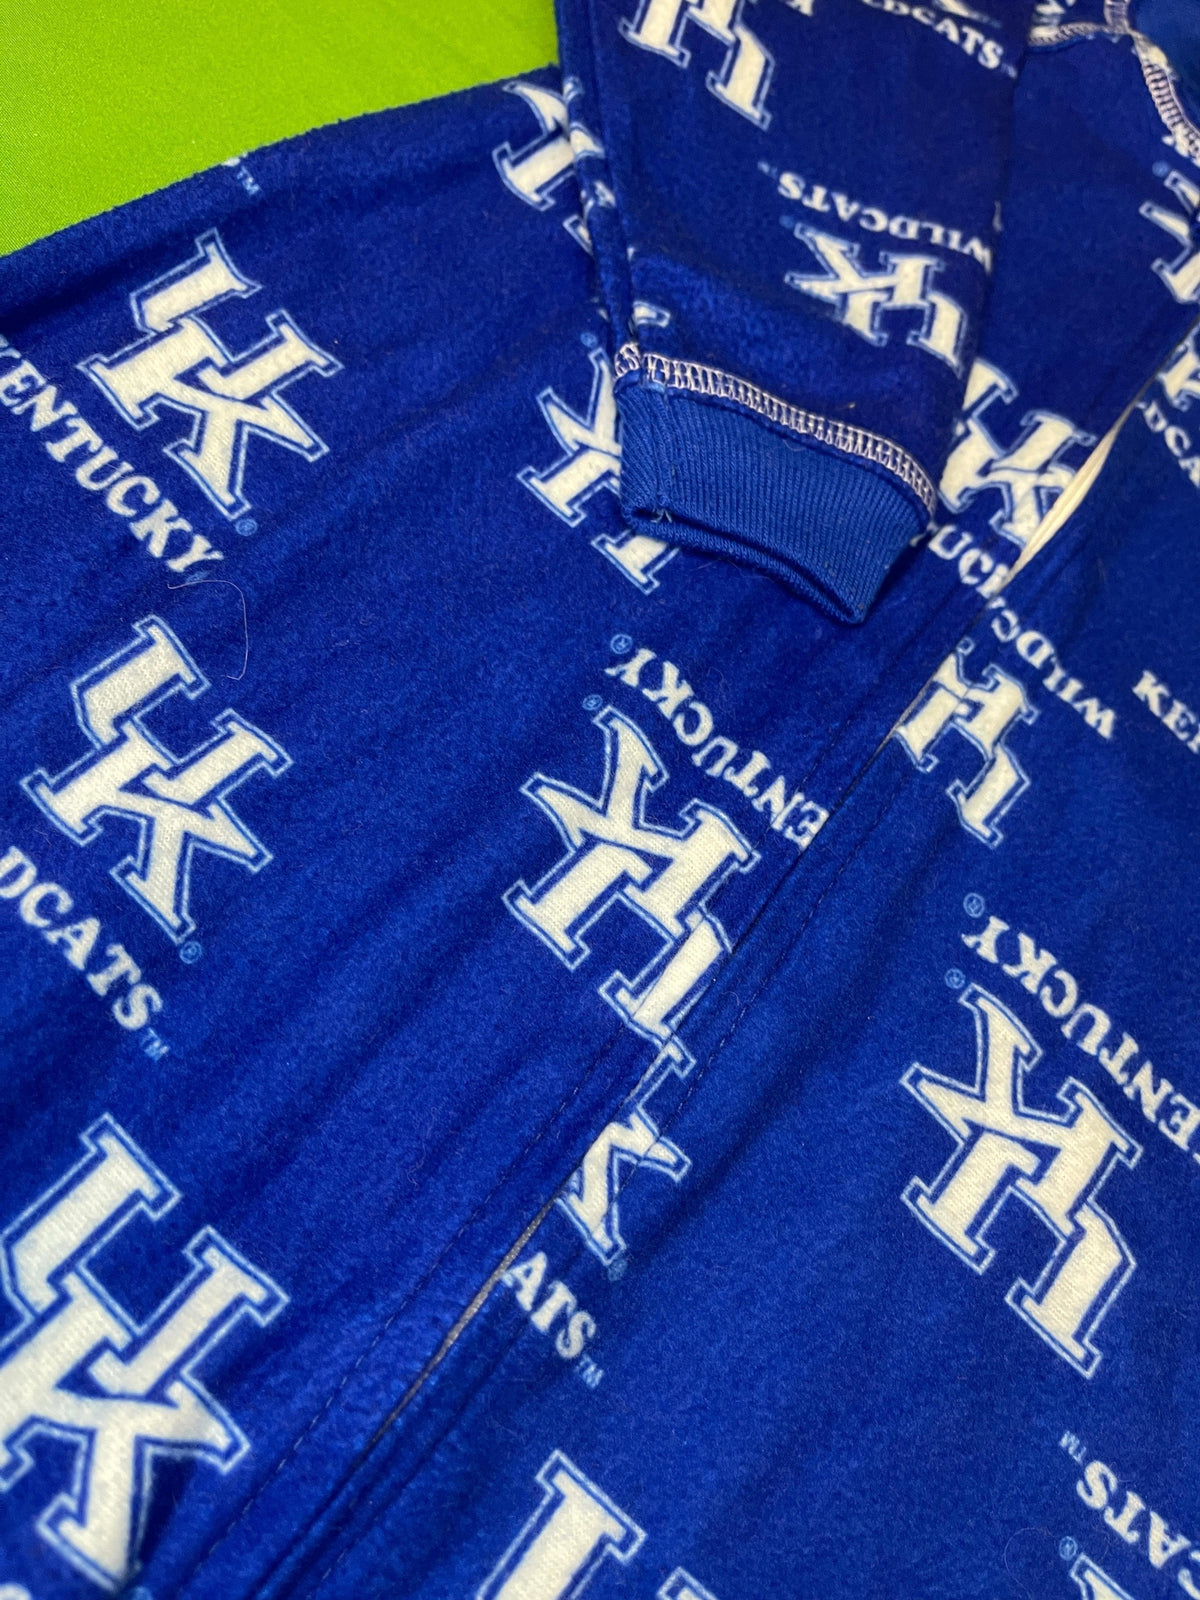 NCAA Kentucky Wildcats Blanket Sleeper Zippered Blue Baby 6-9 months